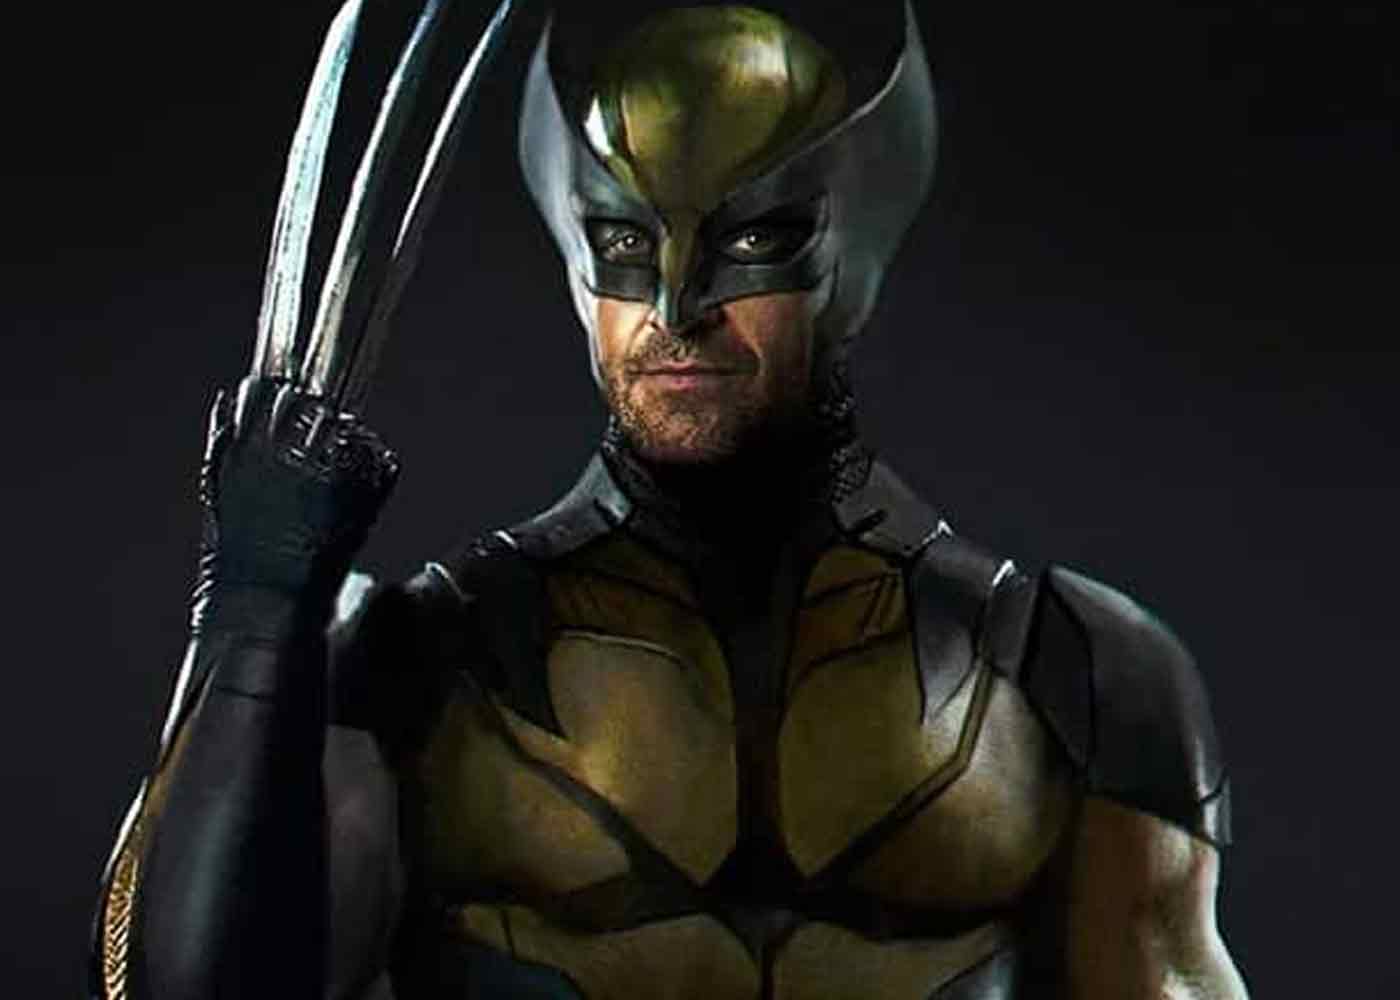 Simak penampilan Wolverine di Deadpool 3 dengan kostumnya yang biasa!